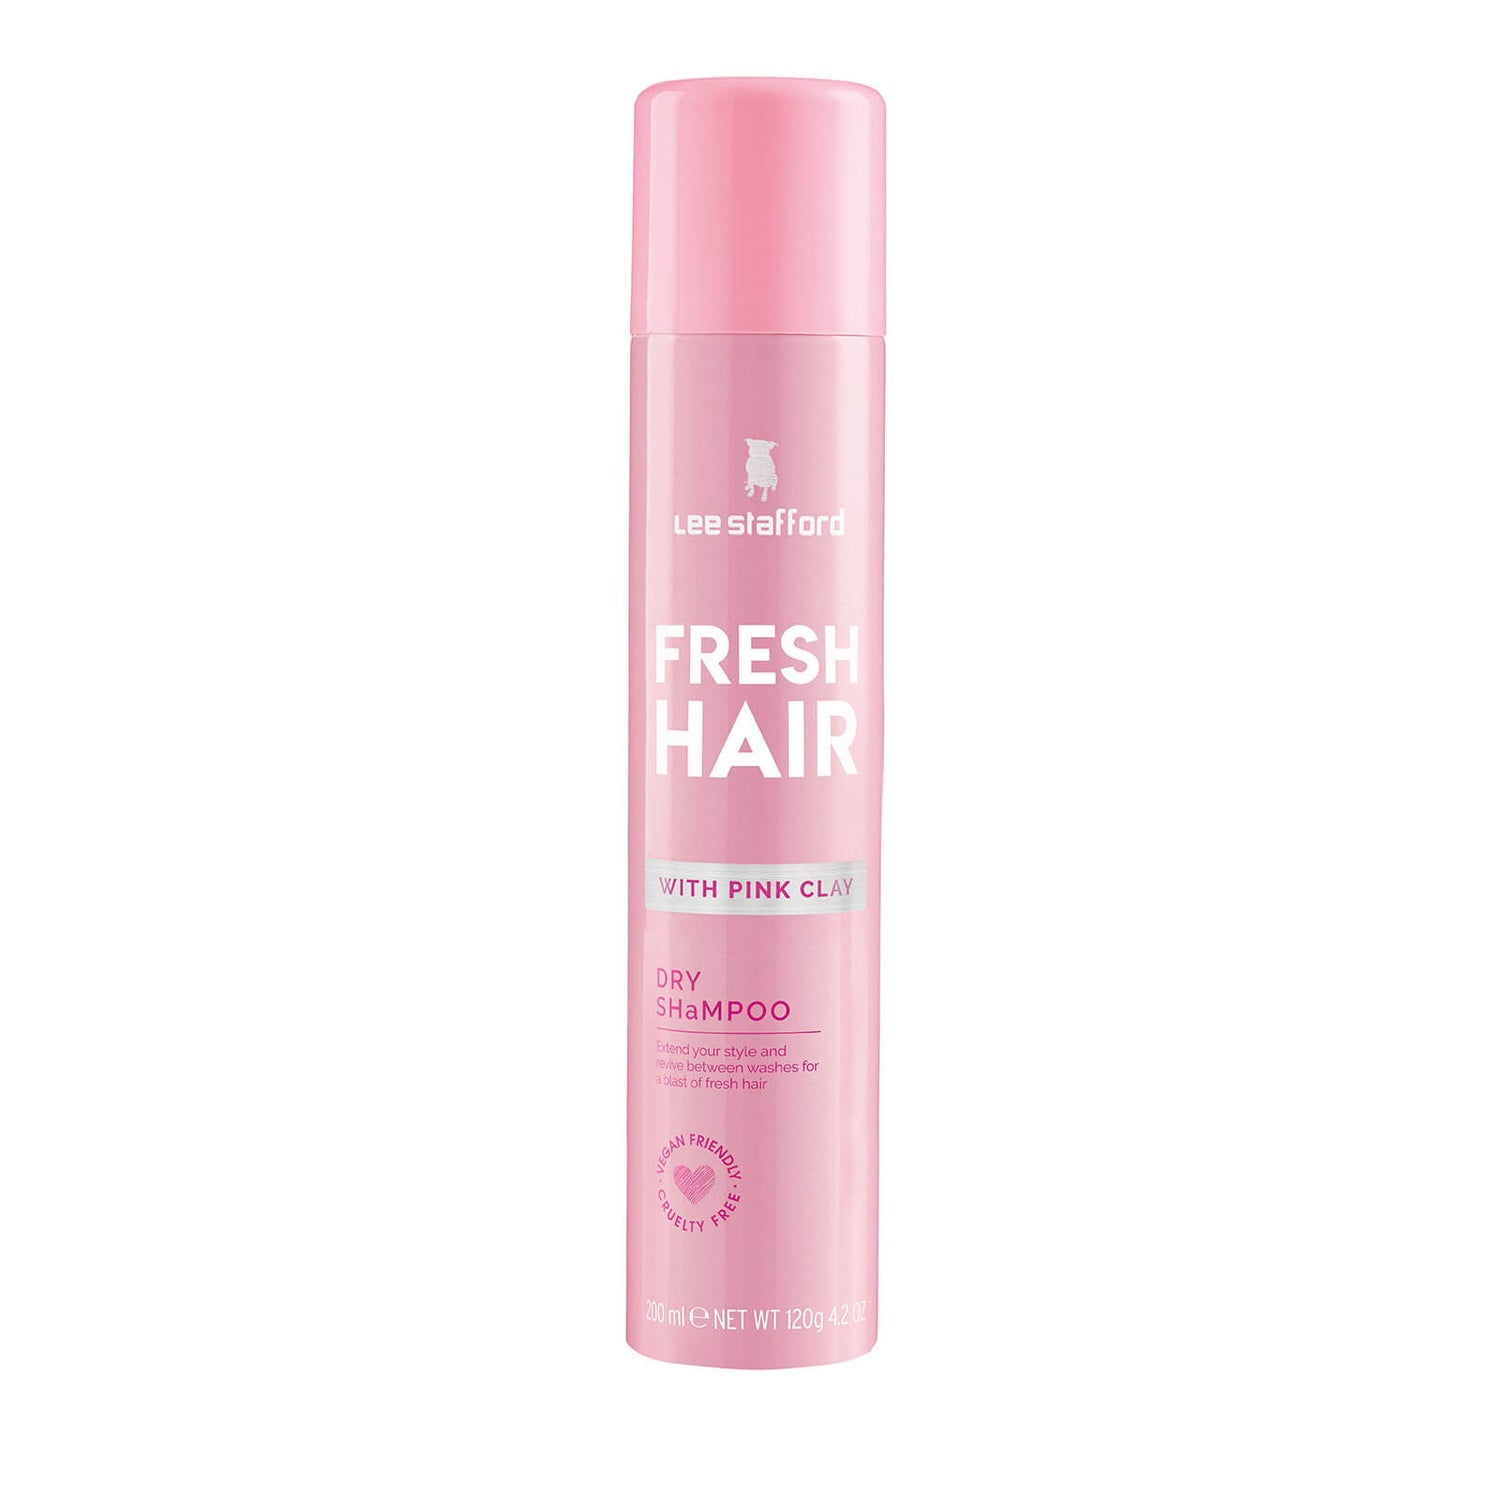 Lee Stafford Fresh Hair Dry Shampoo 6.76 oz | SkinStore